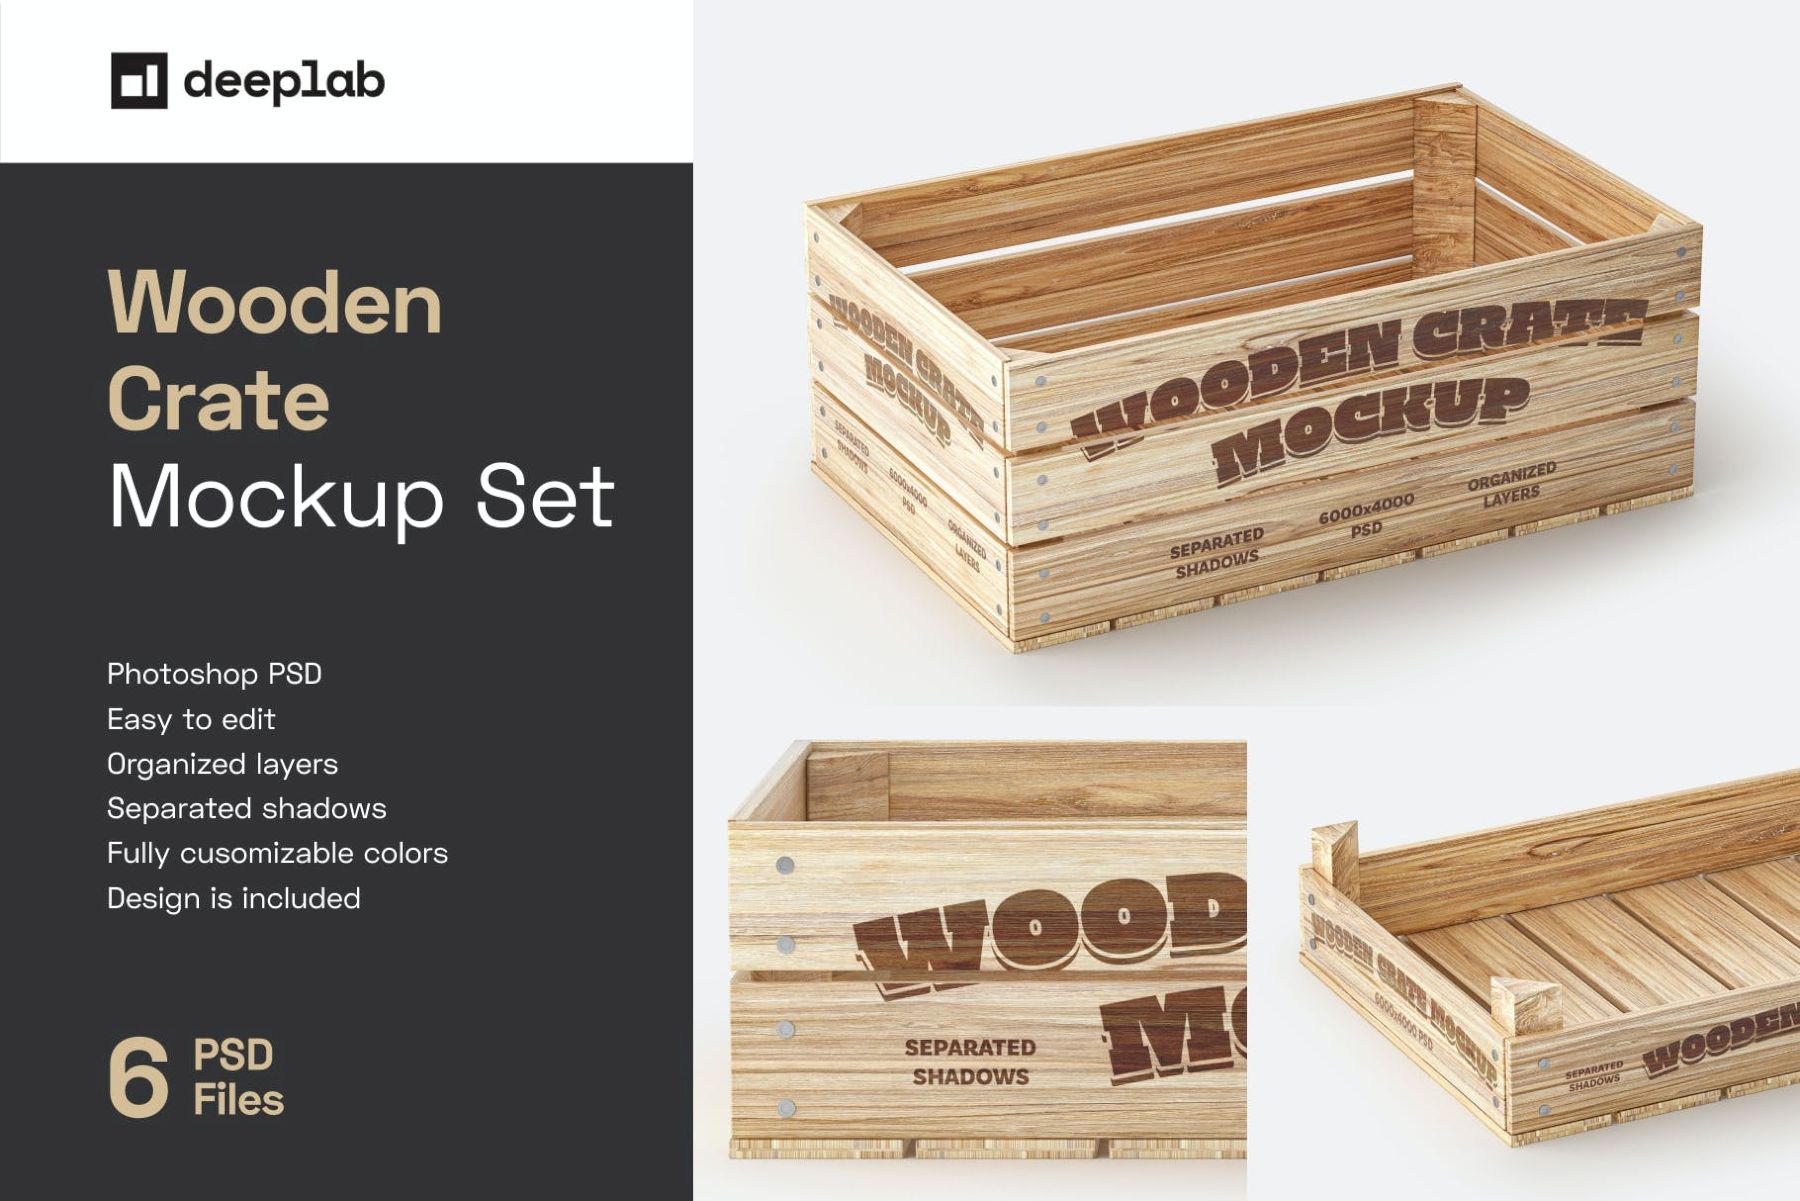 木箱样机套装 Wooden Crate Mockup Set